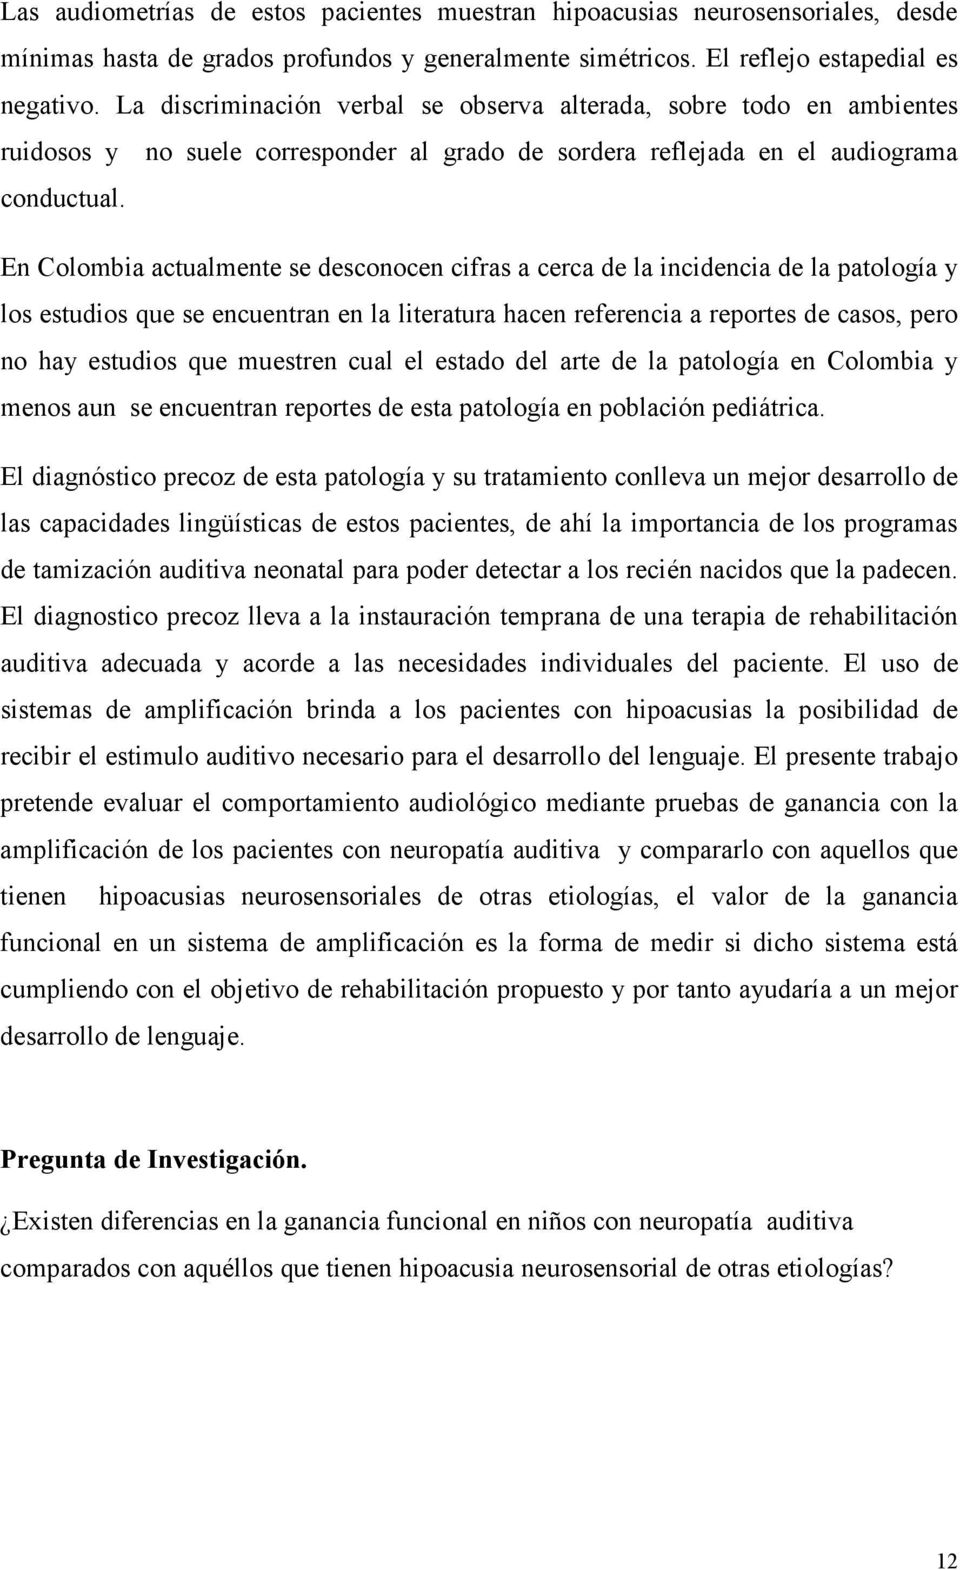 En Colombia actualmente se desconocen cifras a cerca de la incidencia de la patología y los estudios que se encuentran en la literatura hacen referencia a reportes de casos, pero no hay estudios que